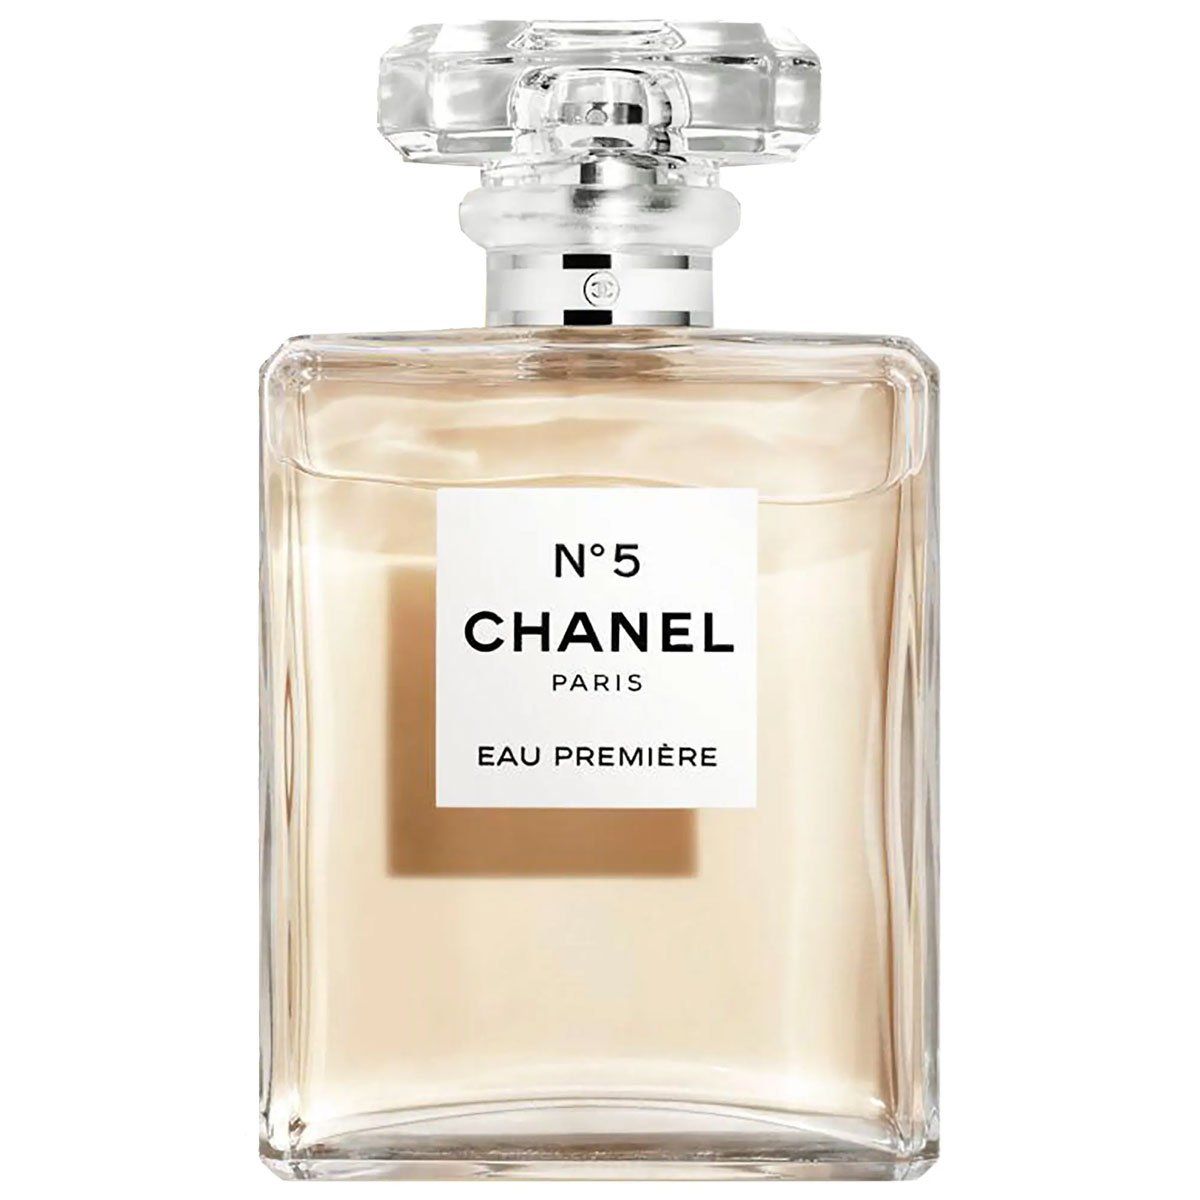  Chanel No 5 Eau Premiere Eau de Parfum 